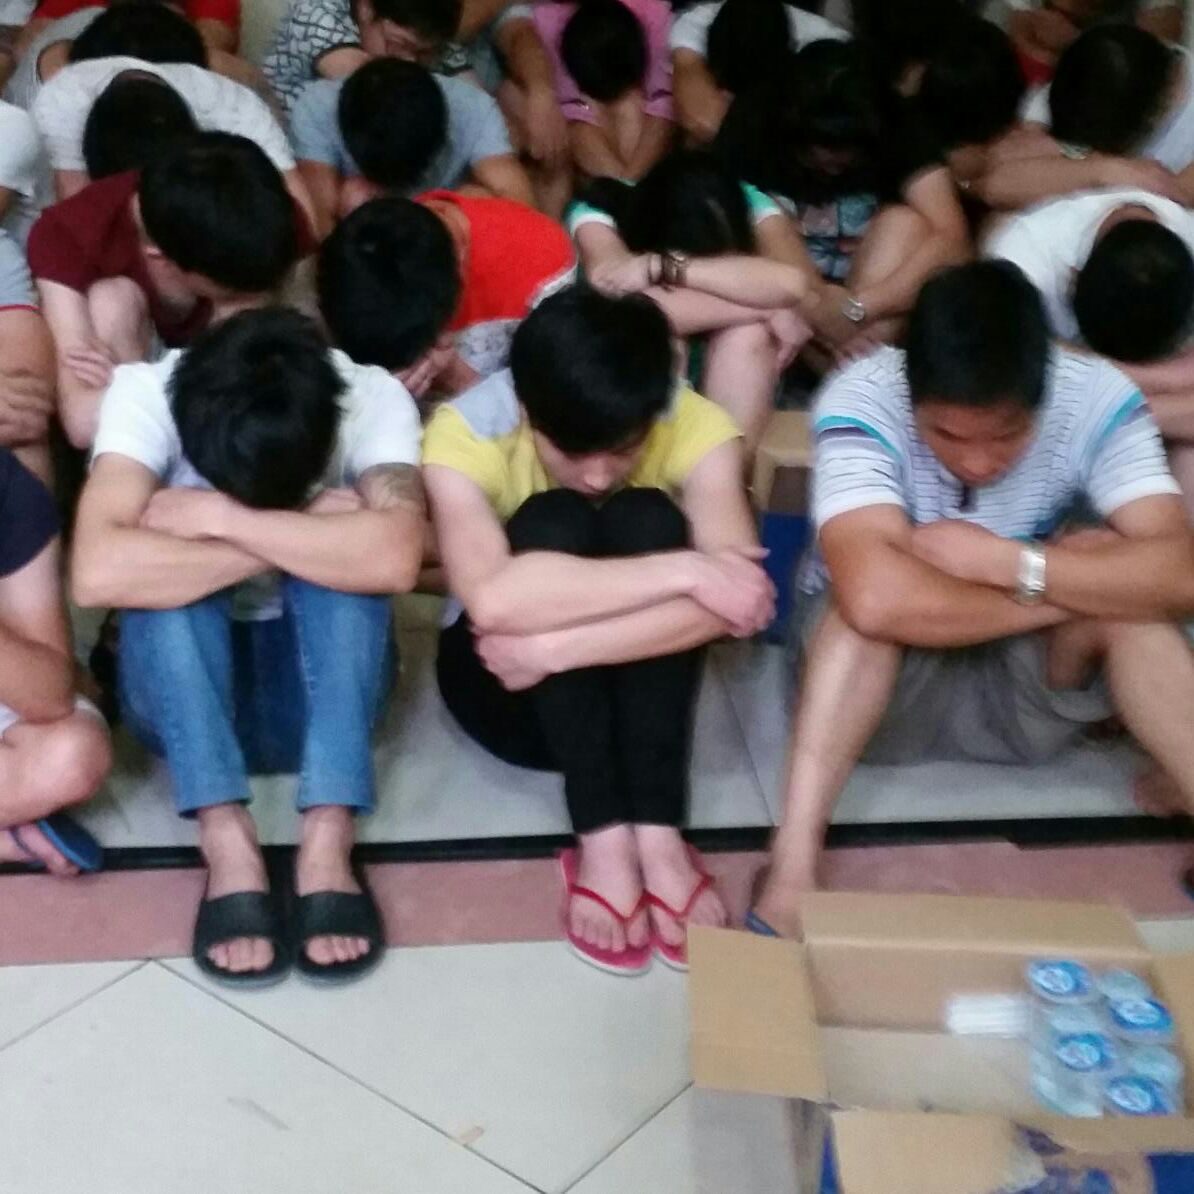 Puluhan WN Tiongkok ditemukan saat polisi menggerebek sebuah rumah di Perumahan Mediterania Golf, Pantai Indah Kapuk, Jakarta Utara, Jumat (31/7) lalu. Mereka diduga melakukan kejahatan cyber. Foto oleh Felicia Santoso 